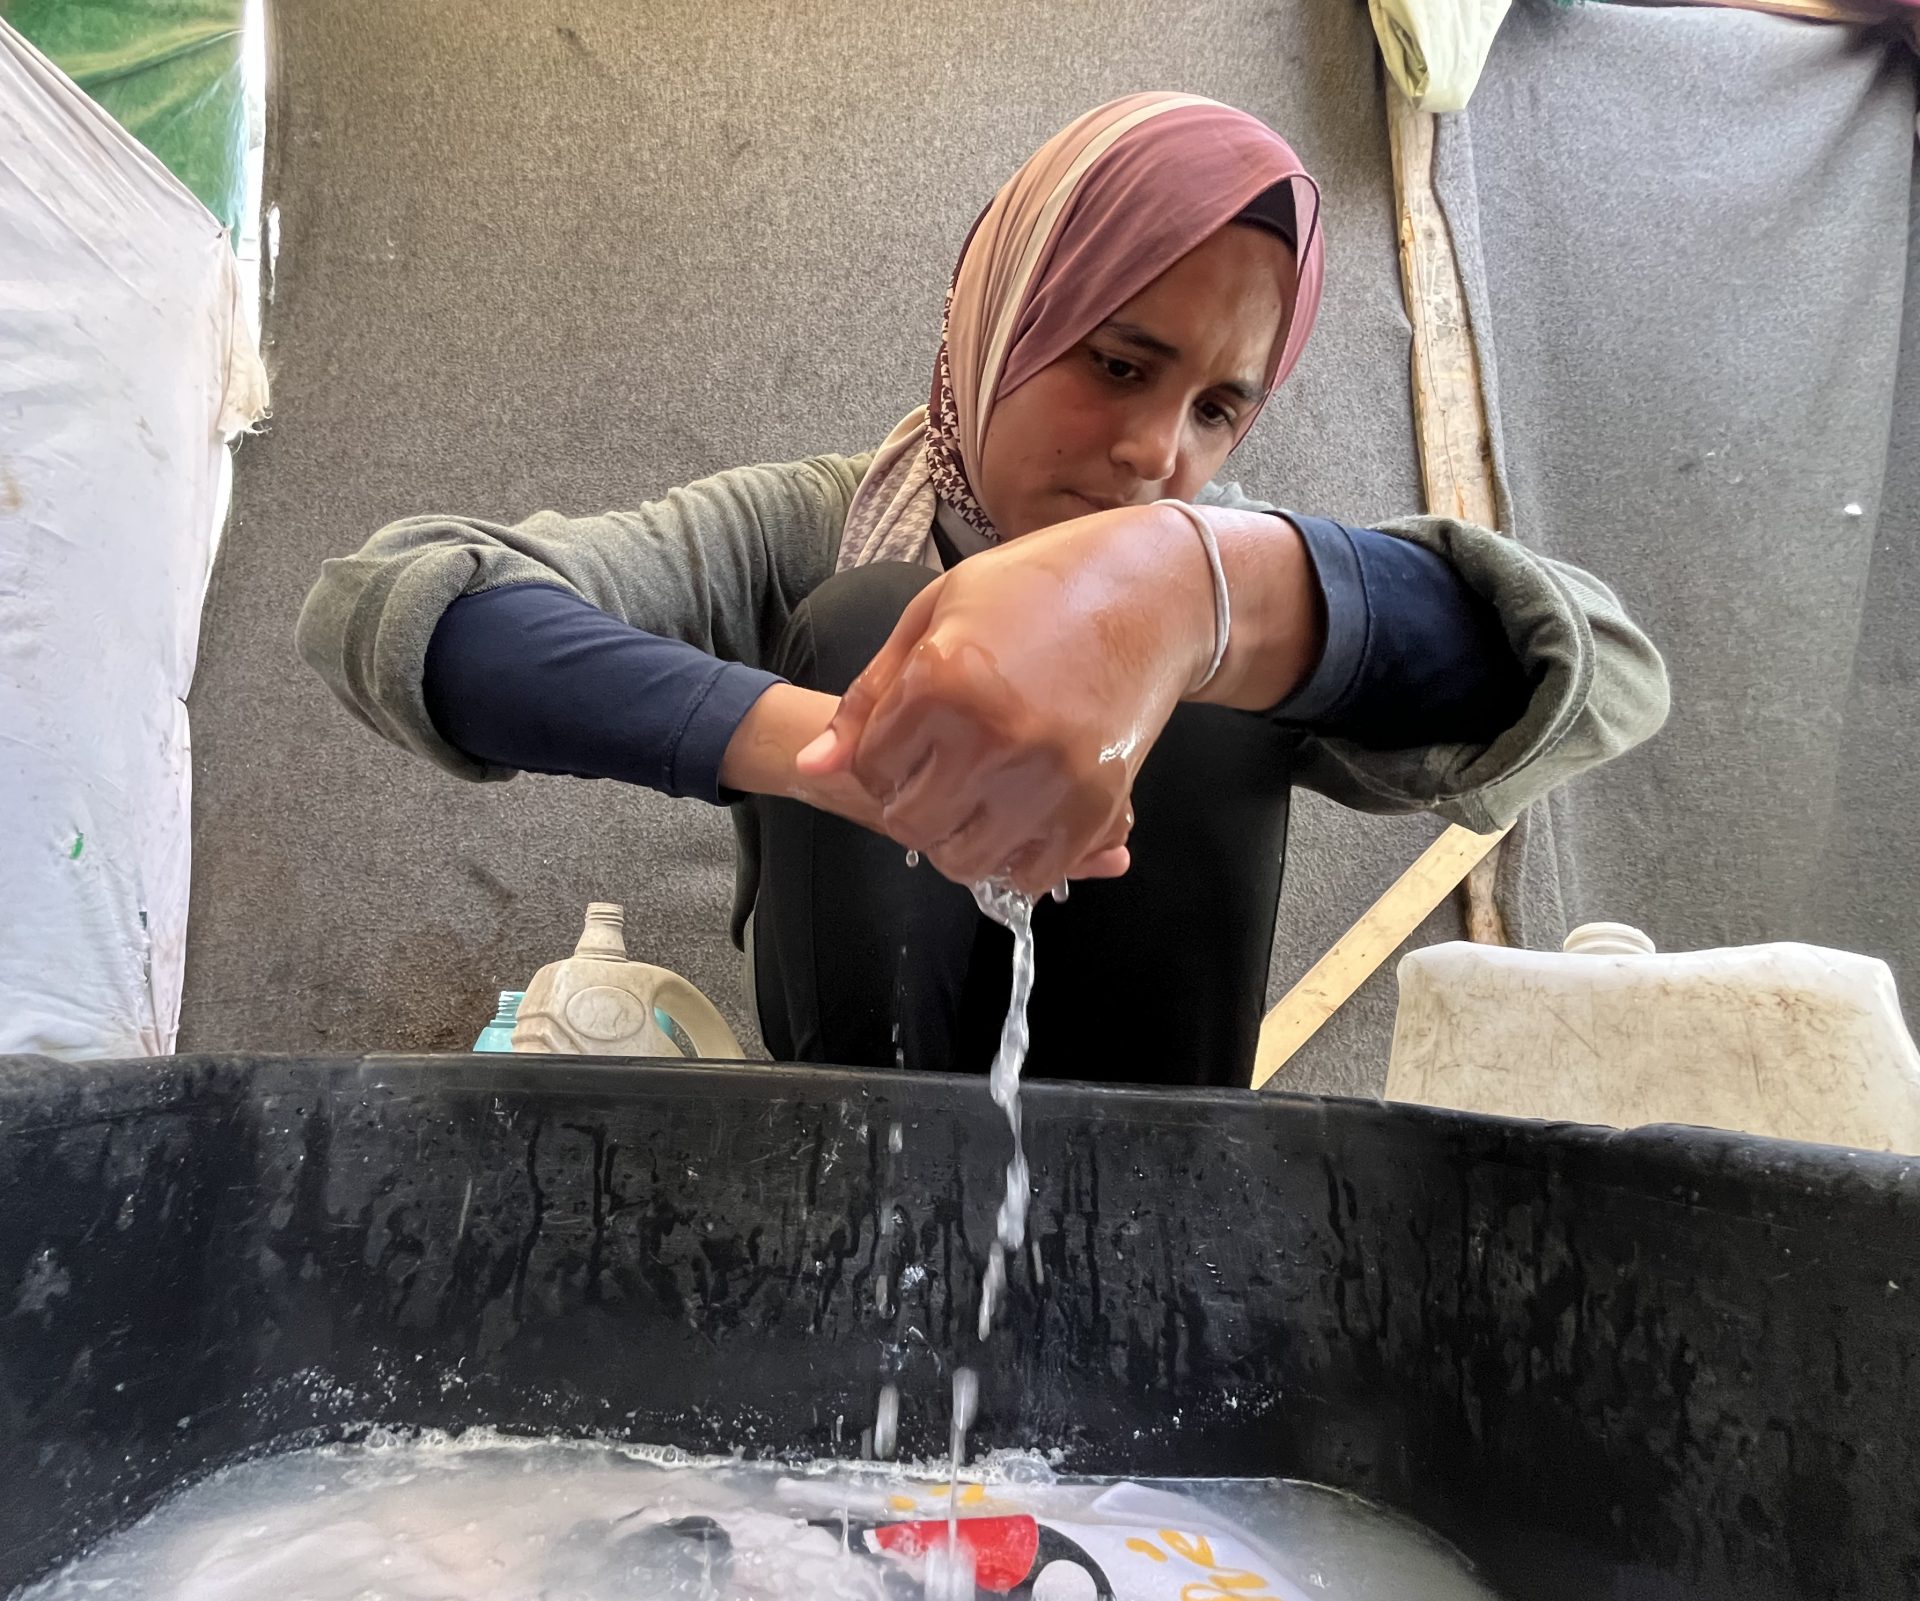 Lavage à bas prix, jeune fille de Gaza lutte pour sa famille